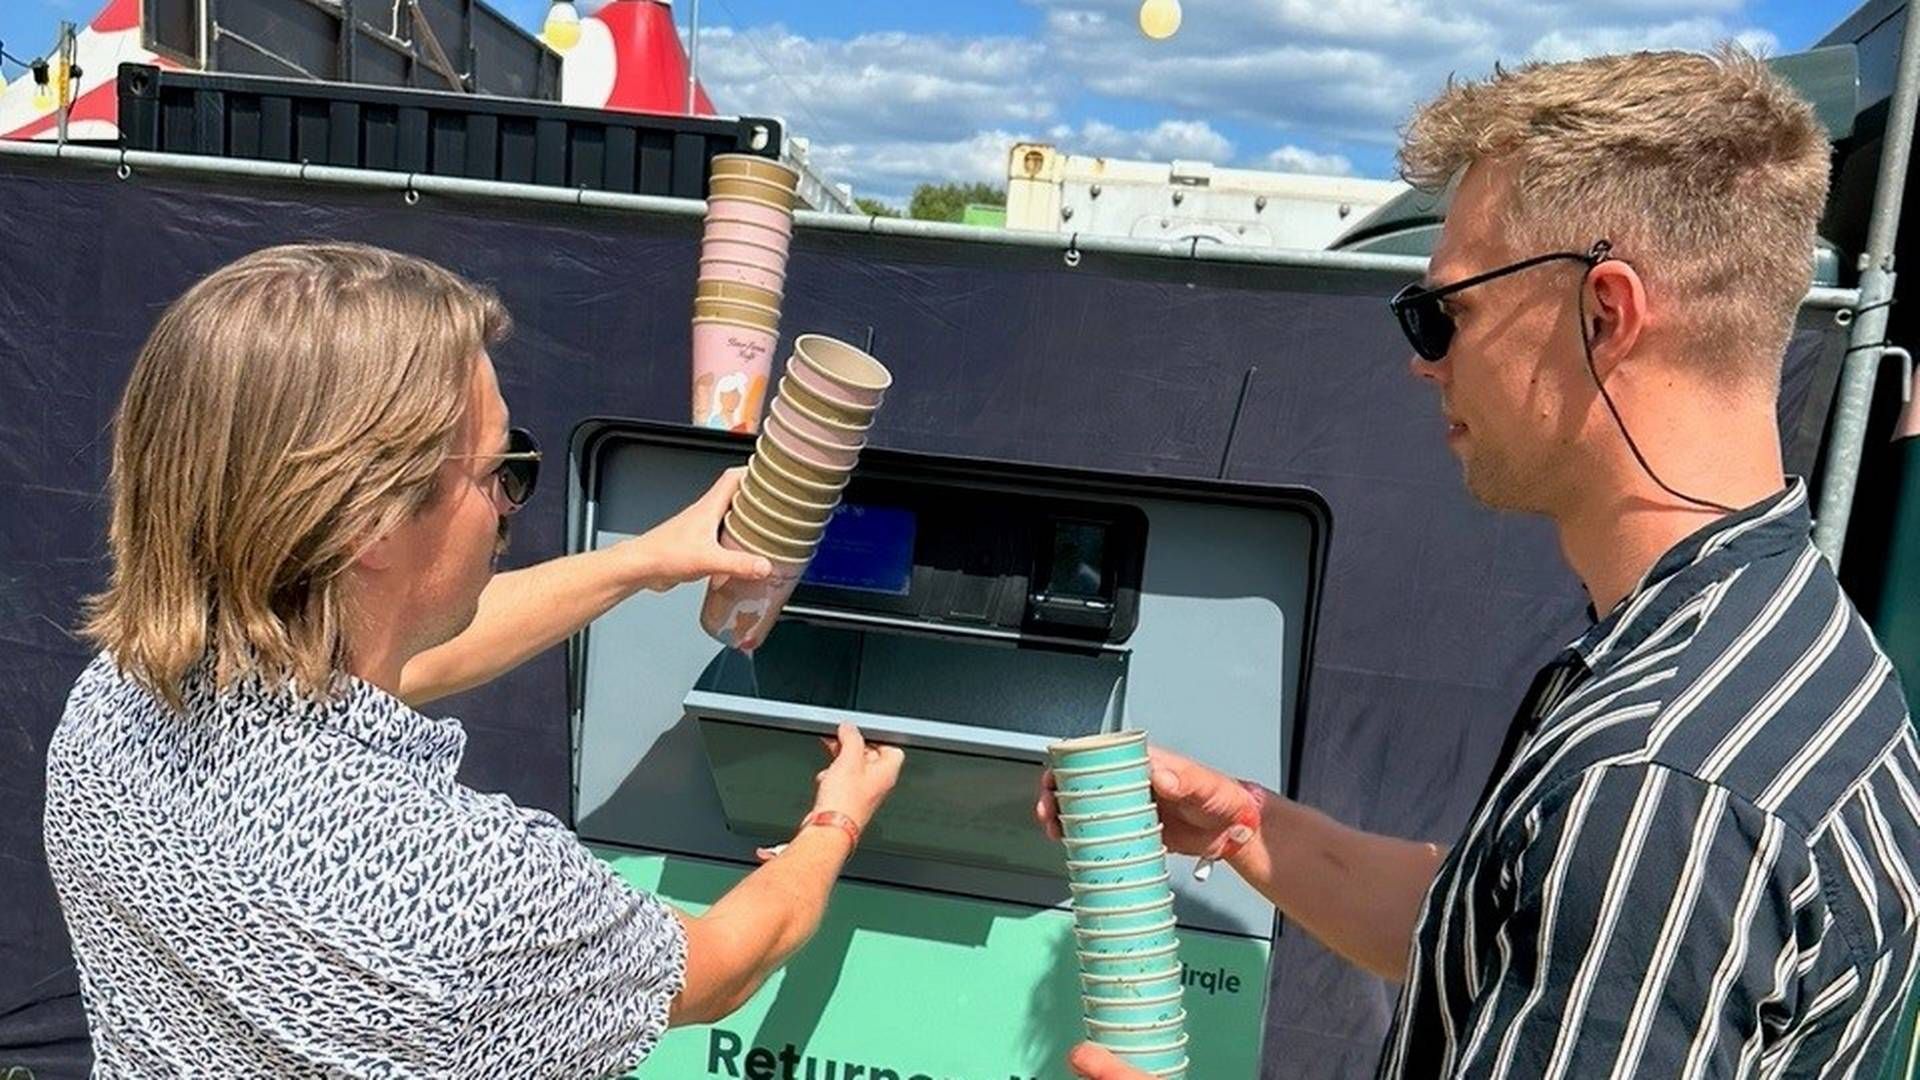 Gæsterne ved Northside Festival kunne i år pante deres kaffekopper i en pantmaskine leveret af Cirqle. | Foto: Cirqle/pr